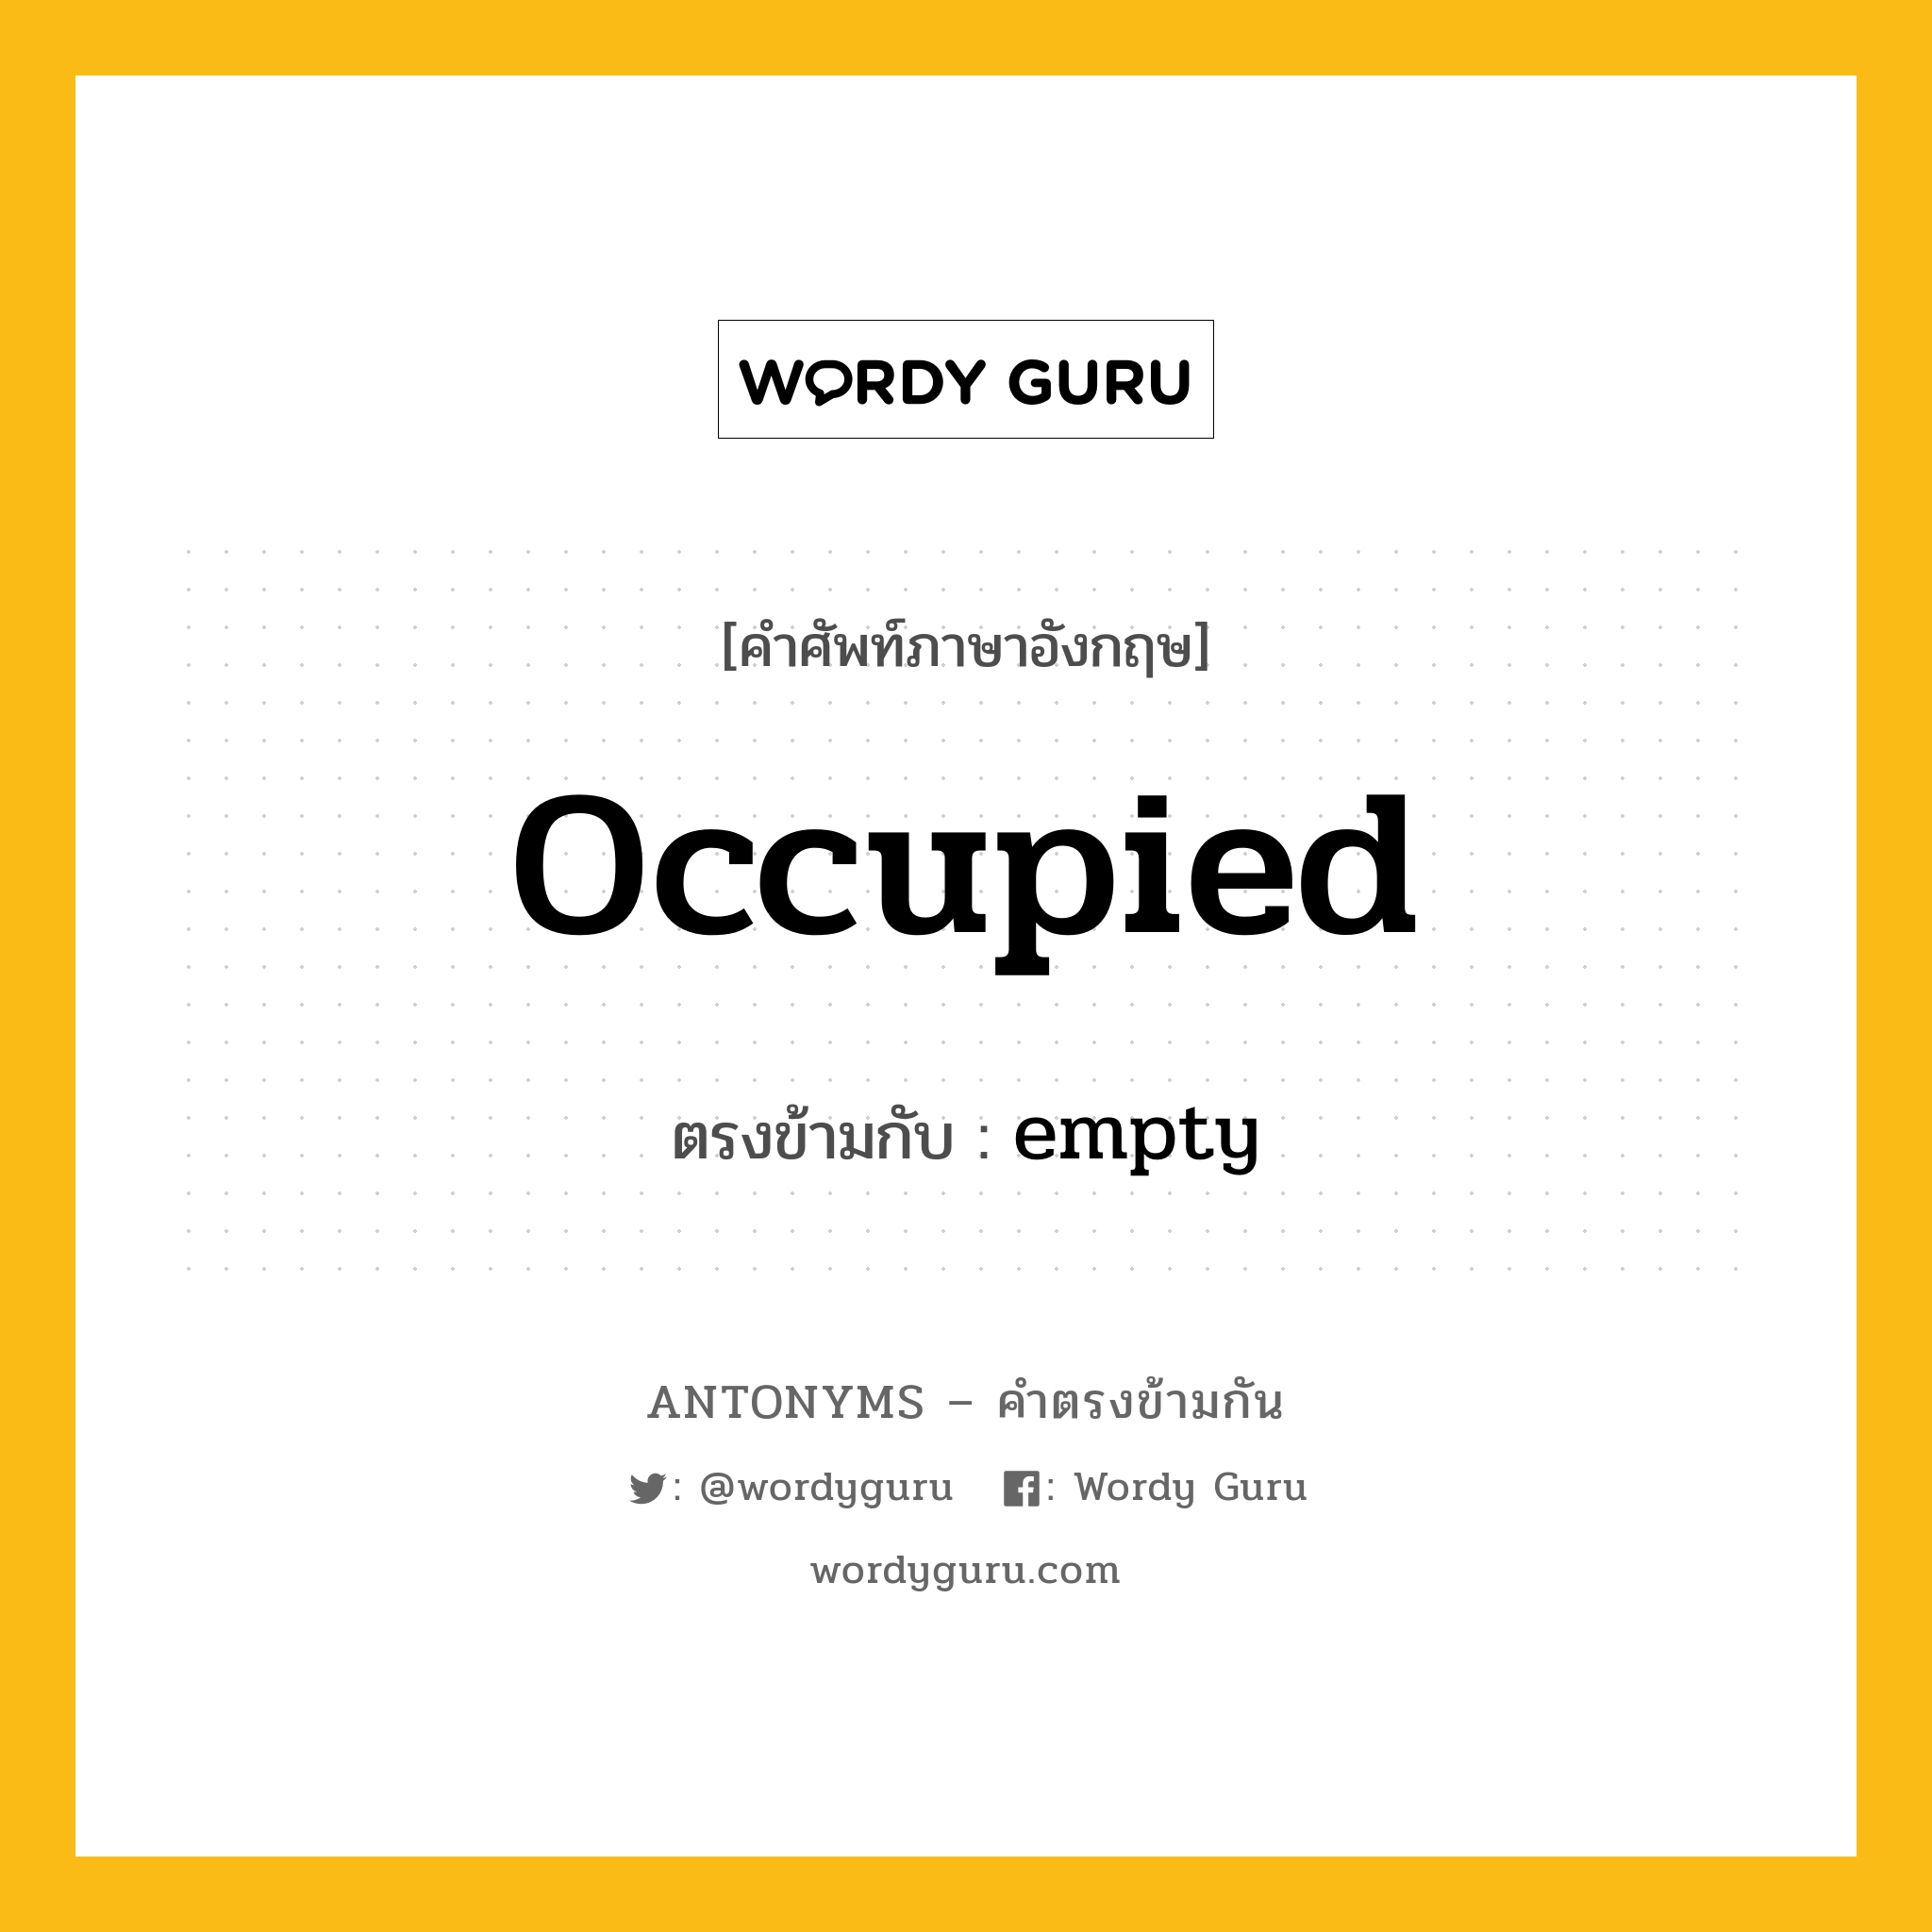 occupied เป็นคำตรงข้ามกับคำไหนบ้าง?, คำศัพท์ภาษาอังกฤษ occupied ตรงข้ามกับ empty หมวด empty